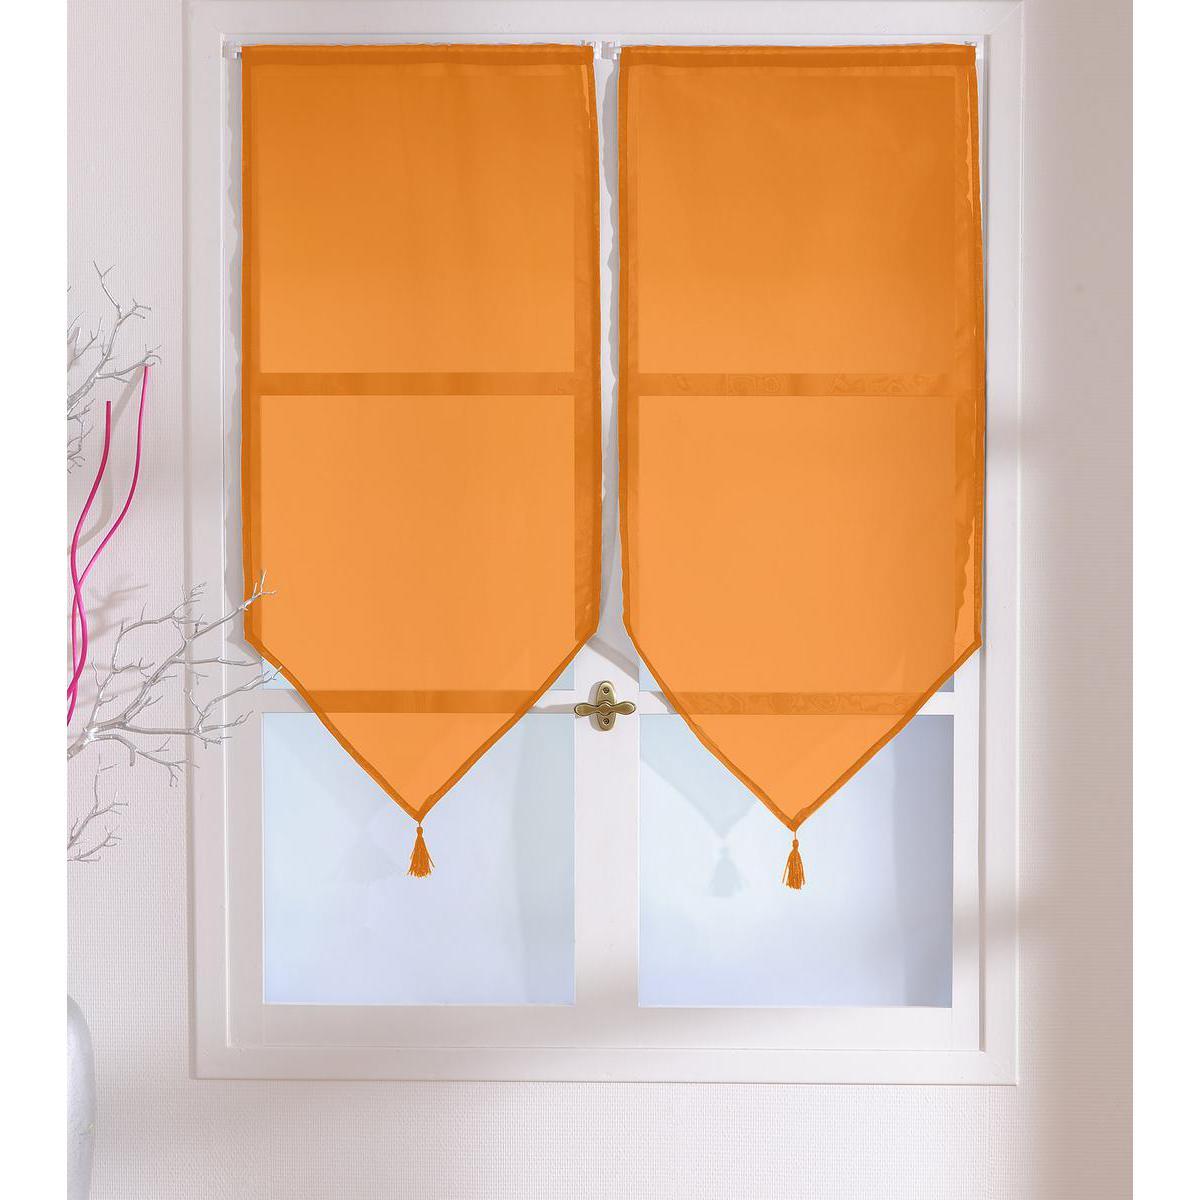 Paire de vitrages - 100% polyester - 60 x 90 cm - Orange